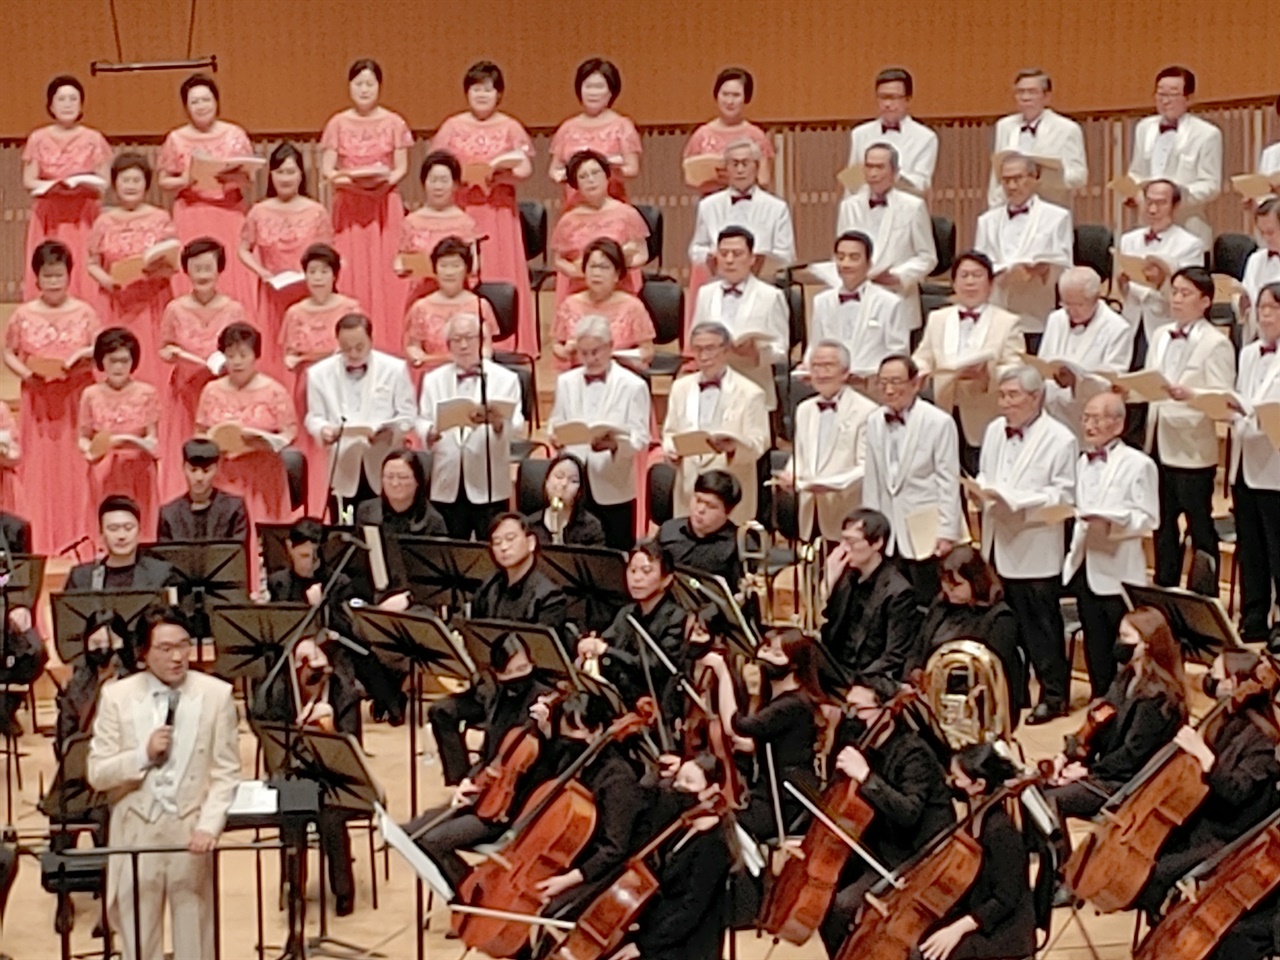  마무리 인사중인 김상경 지휘자가 맨 아랫줄 오른쪽 끝에서 세번째 96세 단원을 소개해주었다. 